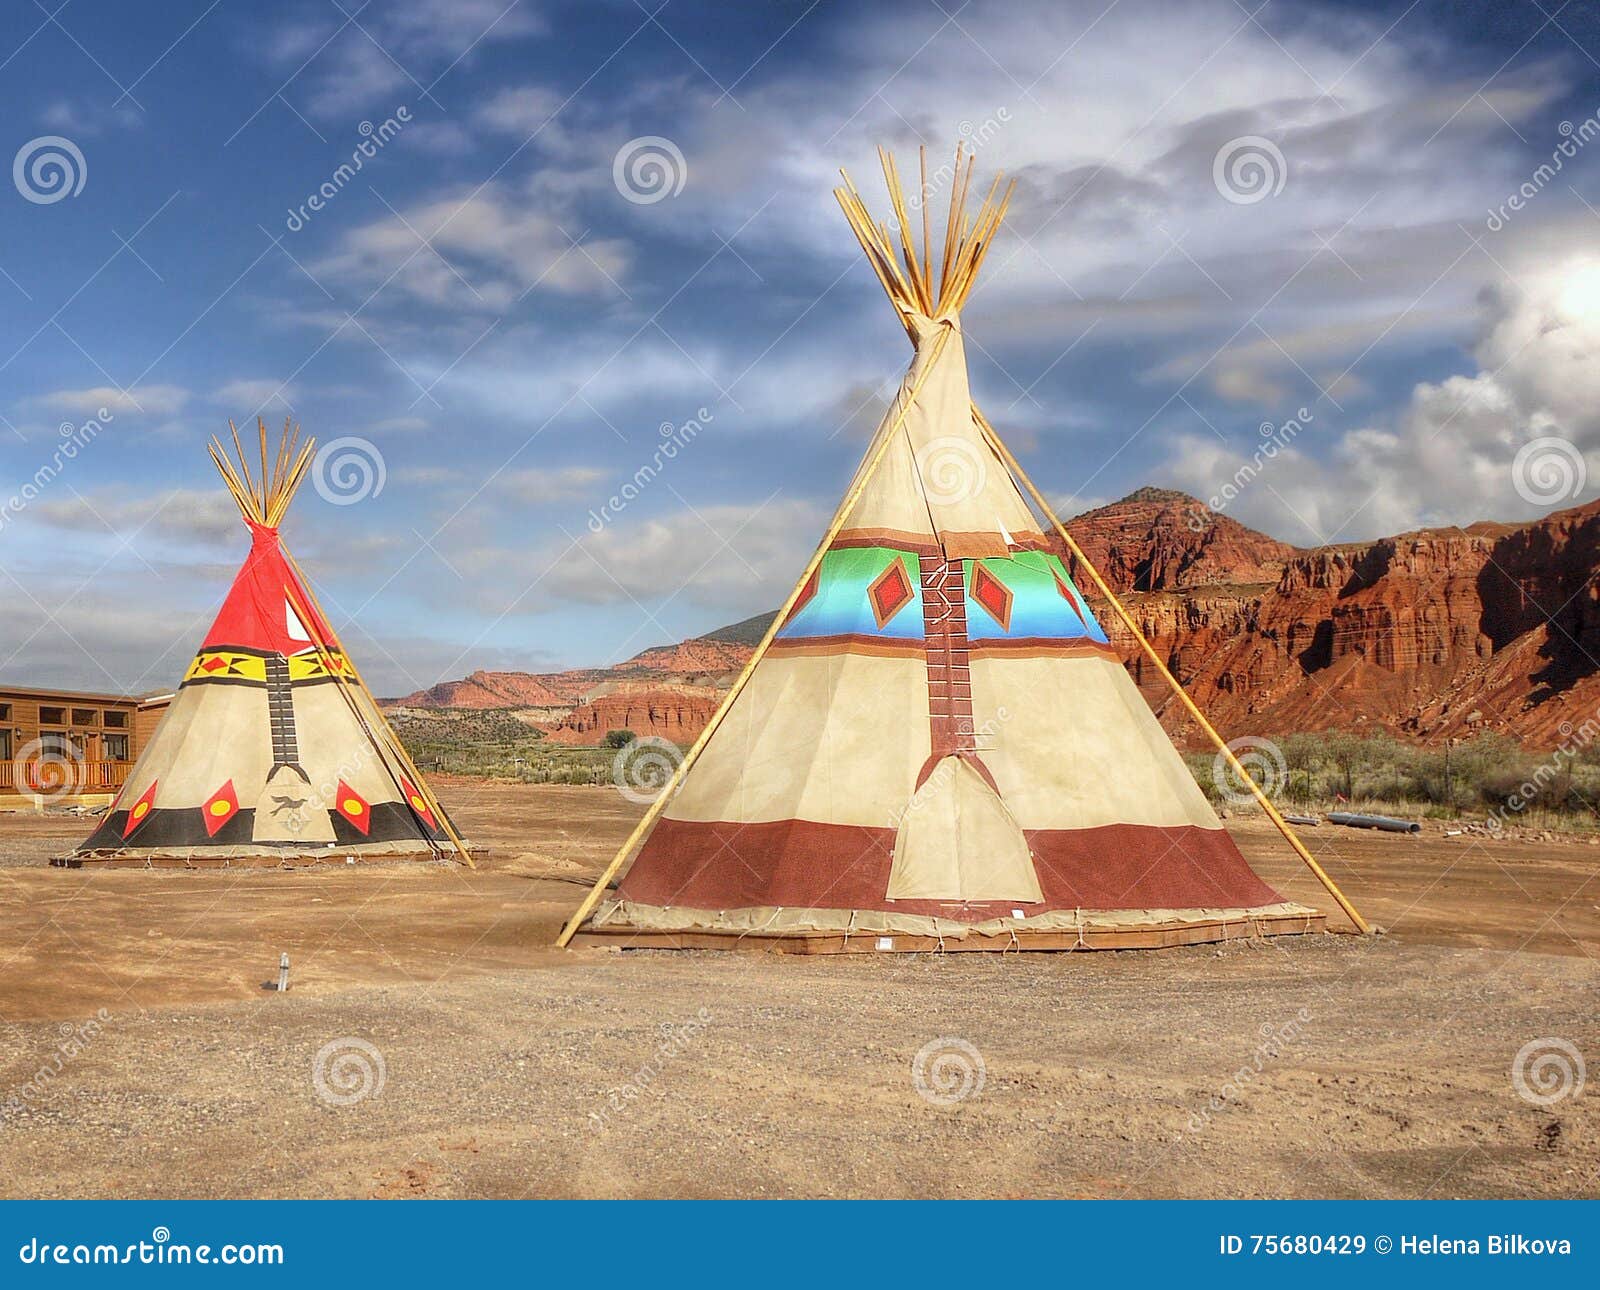 Teepee, Wigwam, Indian Tents